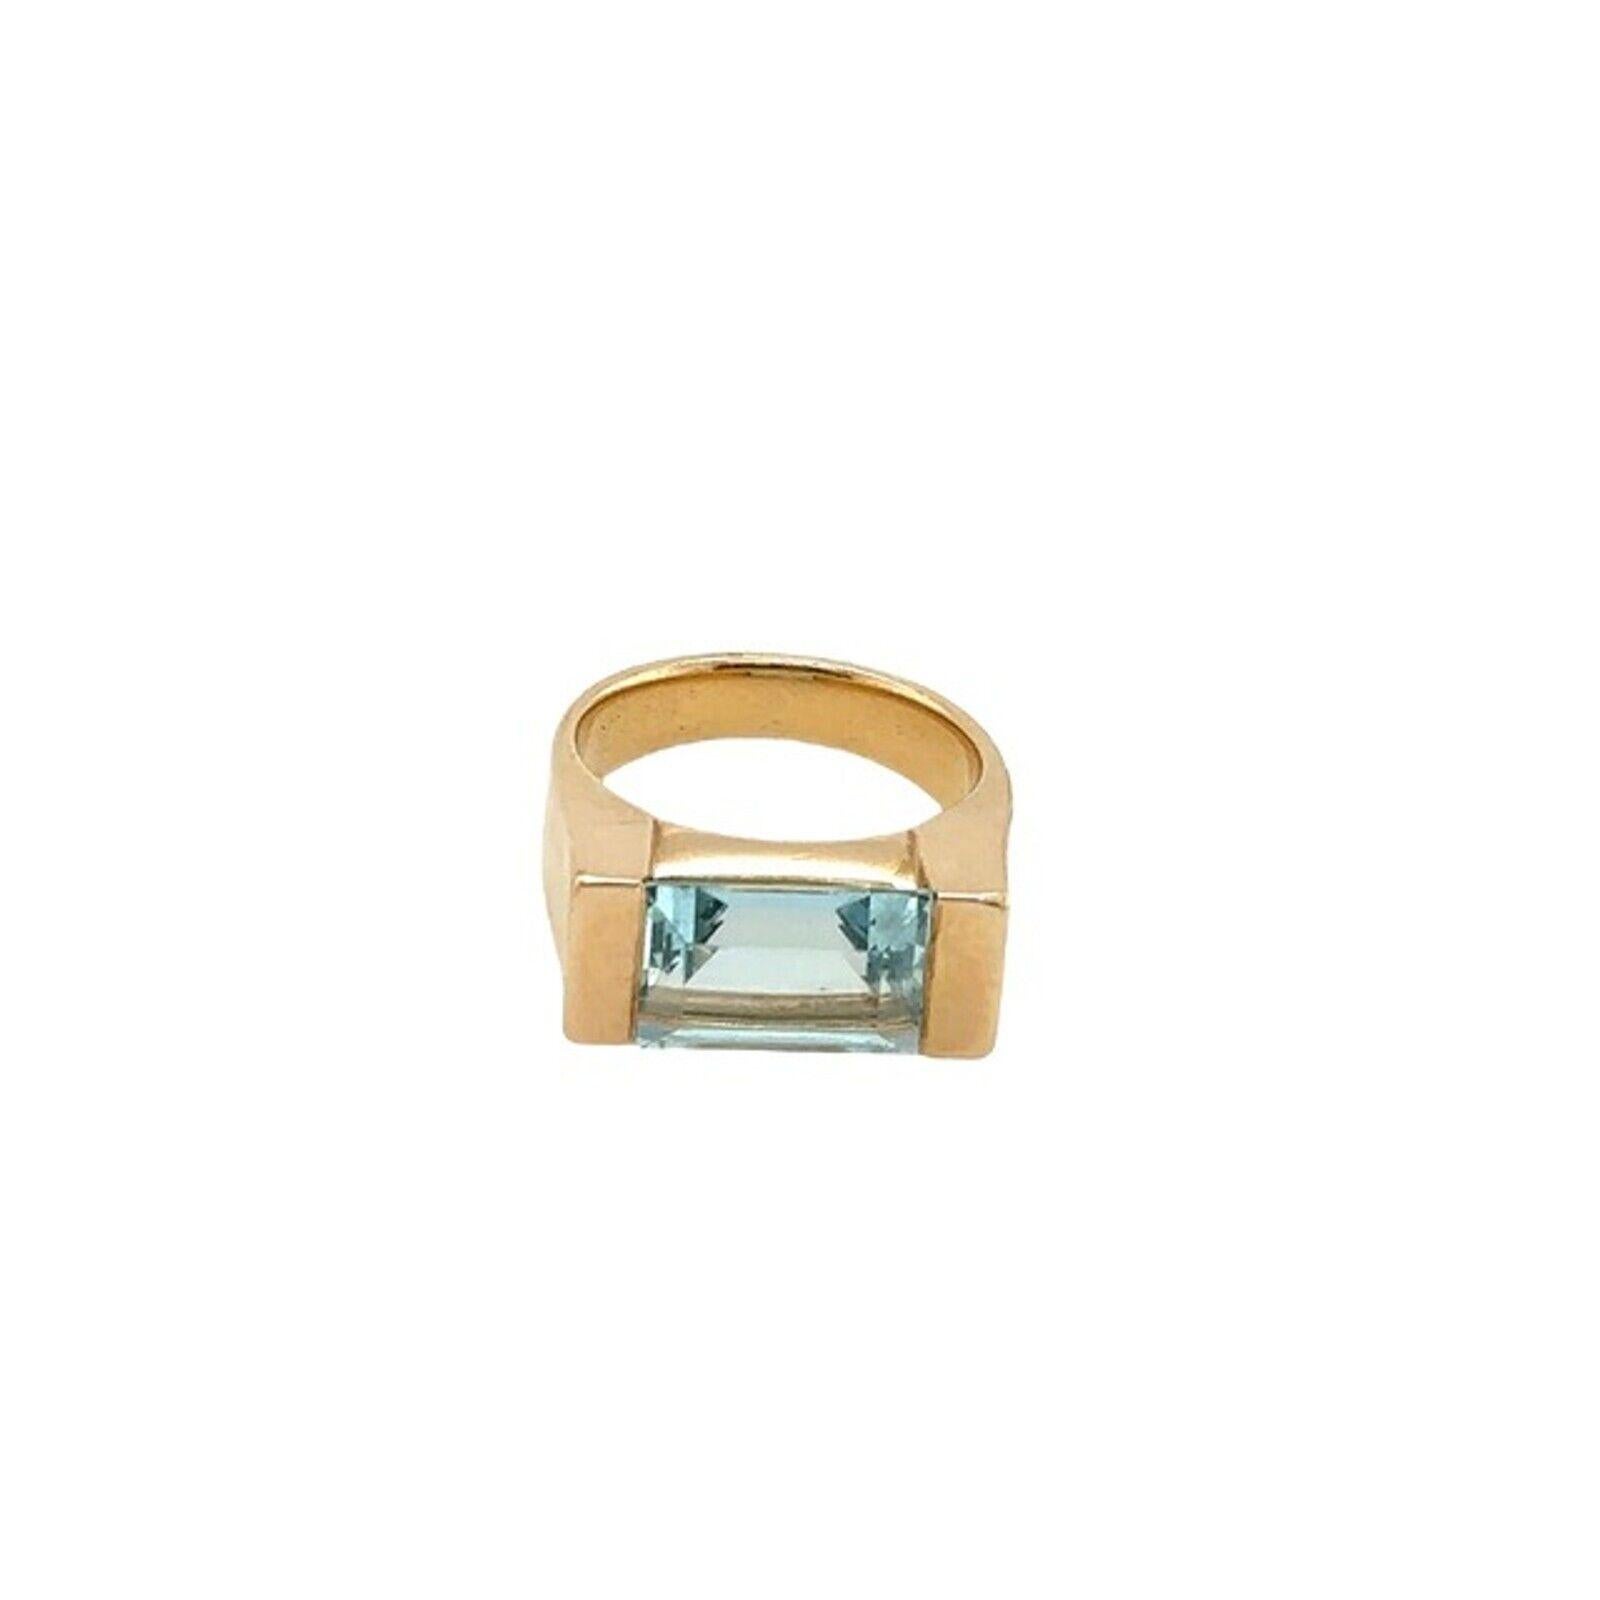 18ct Rose Gold Single Stone Ring, mit 3,0ct feine Qualität Smaragd Form Aquamarin gesetzt, Der Ring ist eine perfekte Ergänzung zu jedem Ensemble und kann zu jedem Anlass getragen werden.

Zusätzliche Informationen:
Gesamtgewicht des Aquamarins: